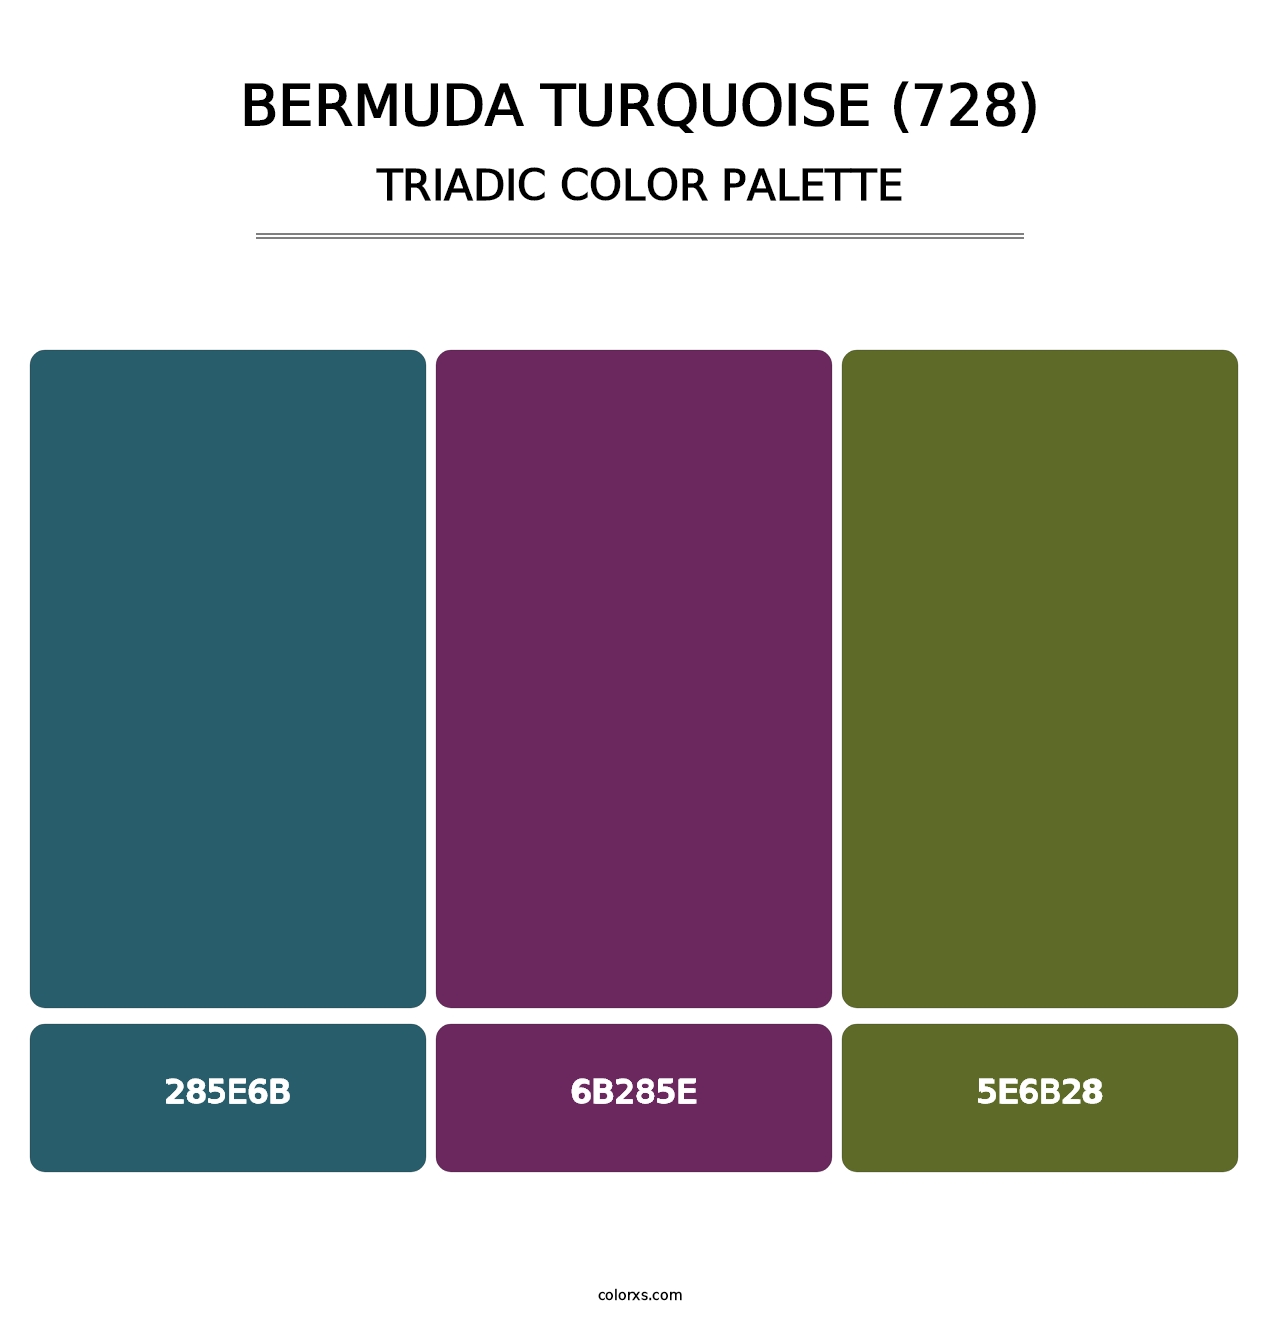 Bermuda Turquoise (728) - Triadic Color Palette